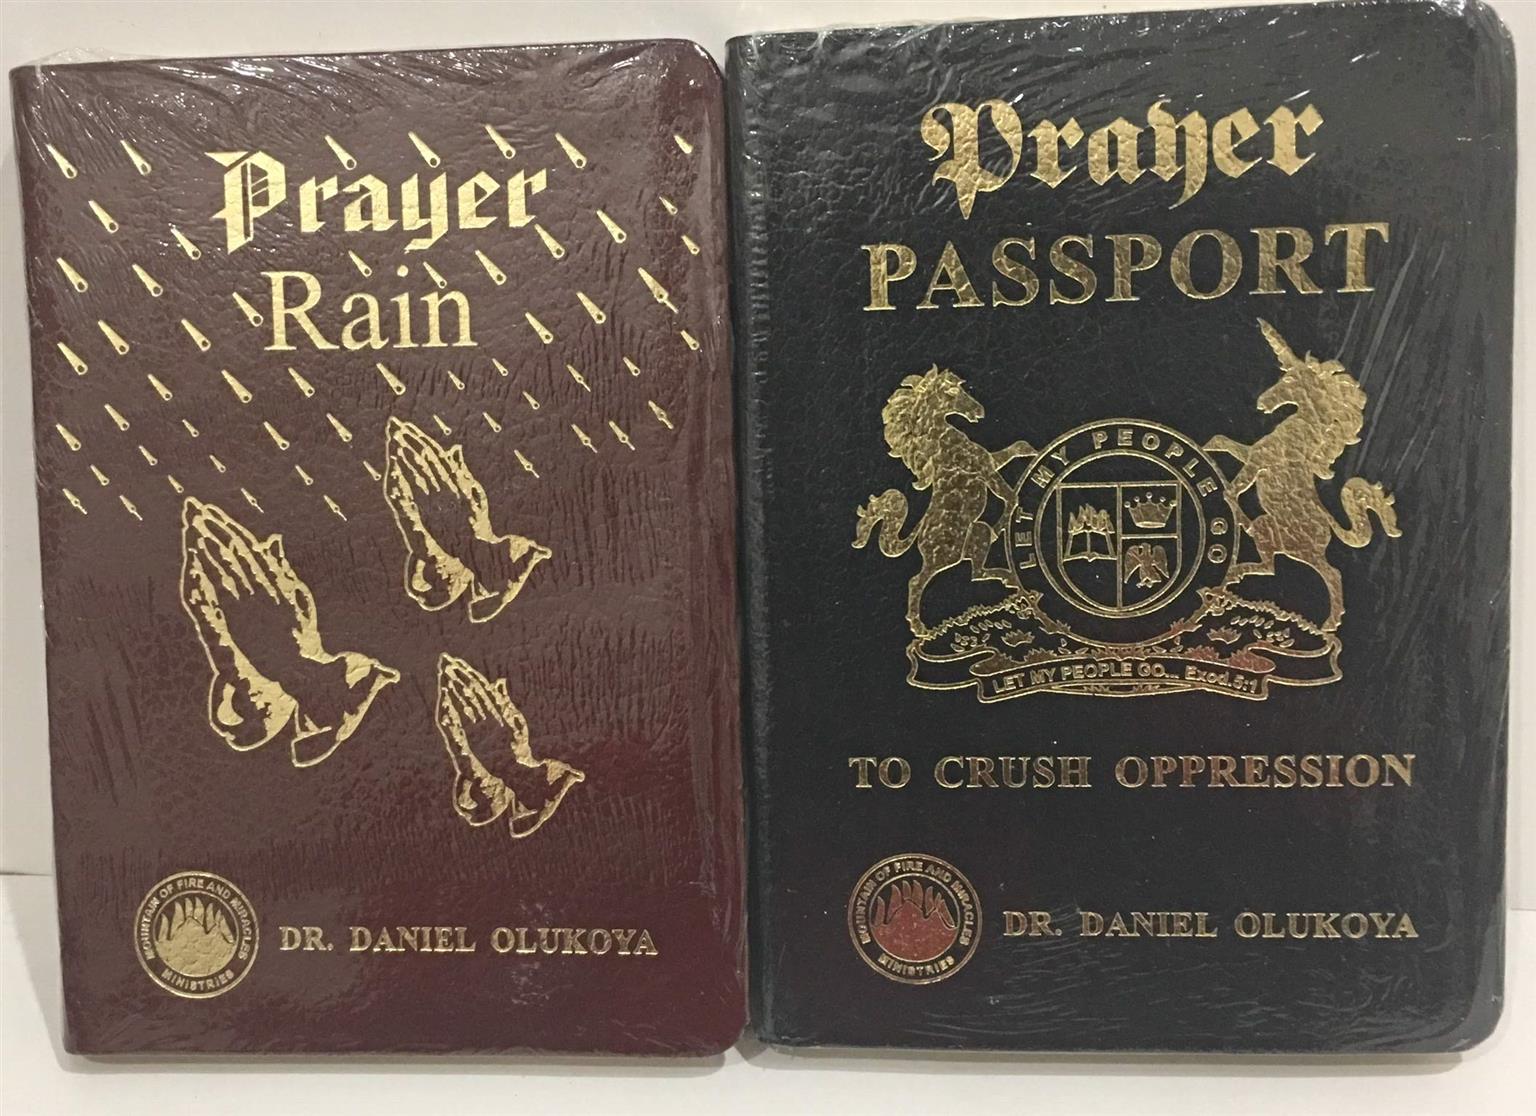 Prayer rain